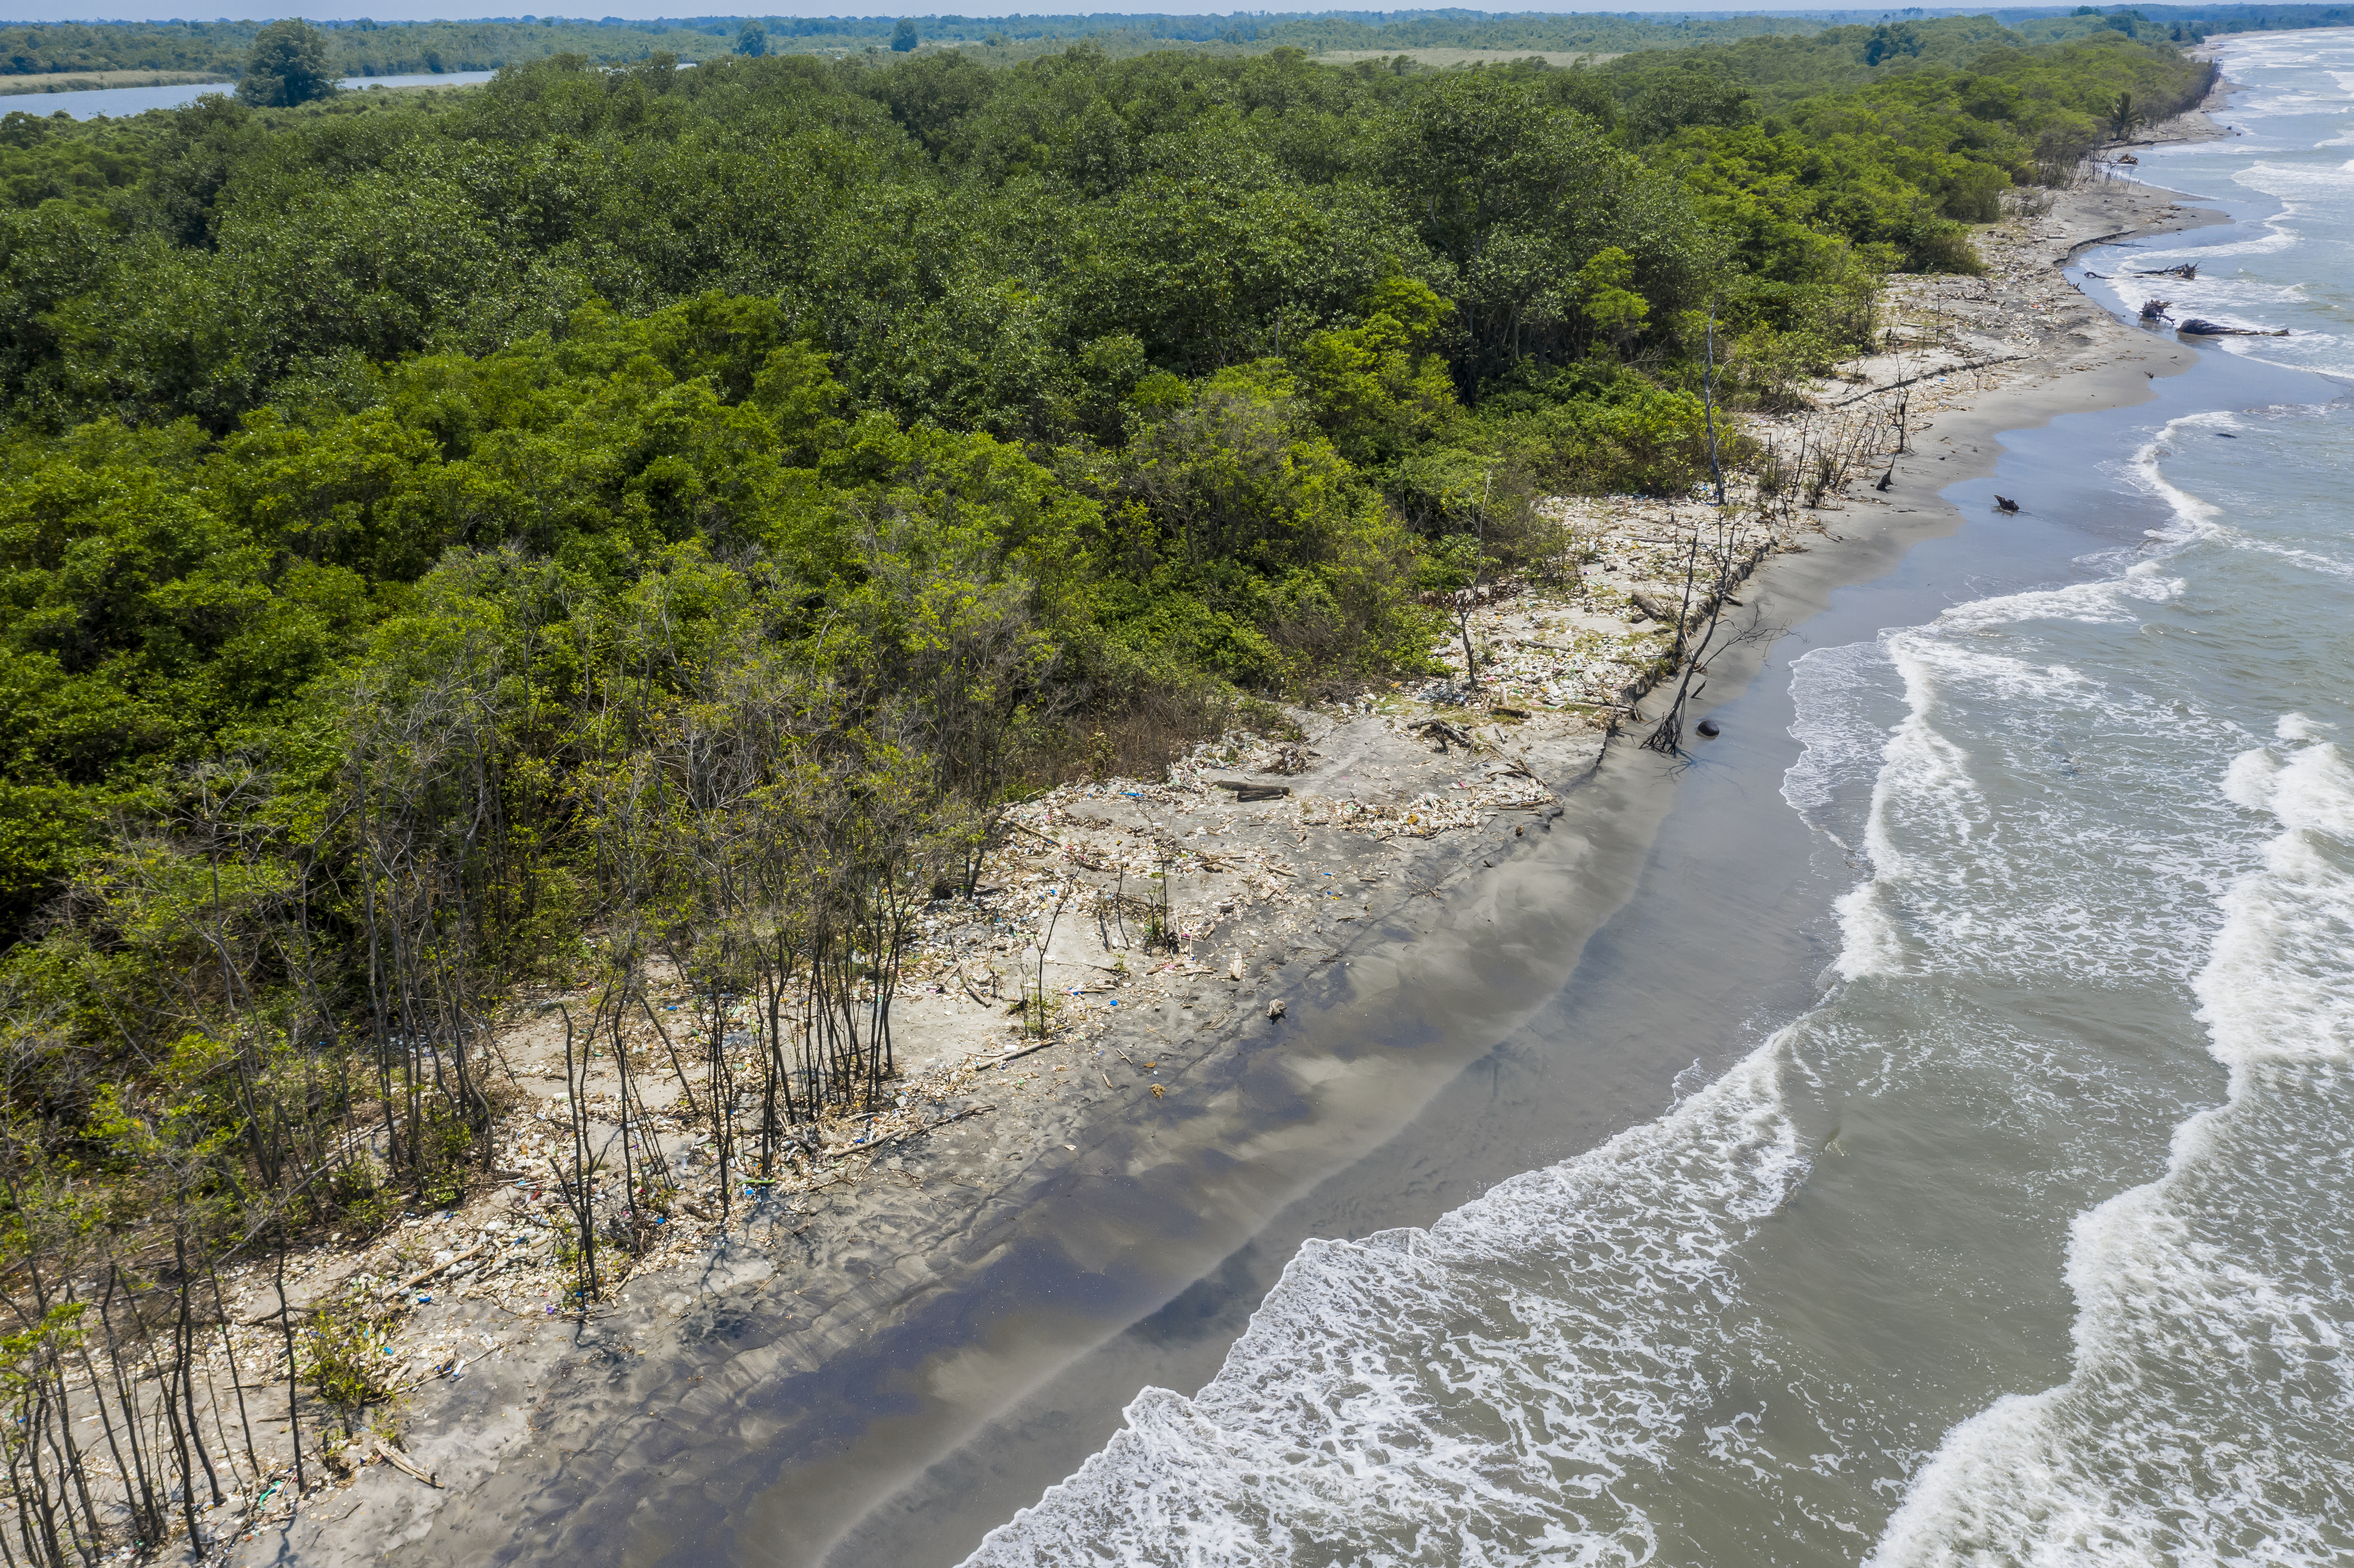 En la desembocadura del río Motagua, se observa gran cantidad de desechos sólidos, entre ellos un sin número de plásticos. (Foto Prensa Libre: Sergio Izquierdo de Rescue The Planet)